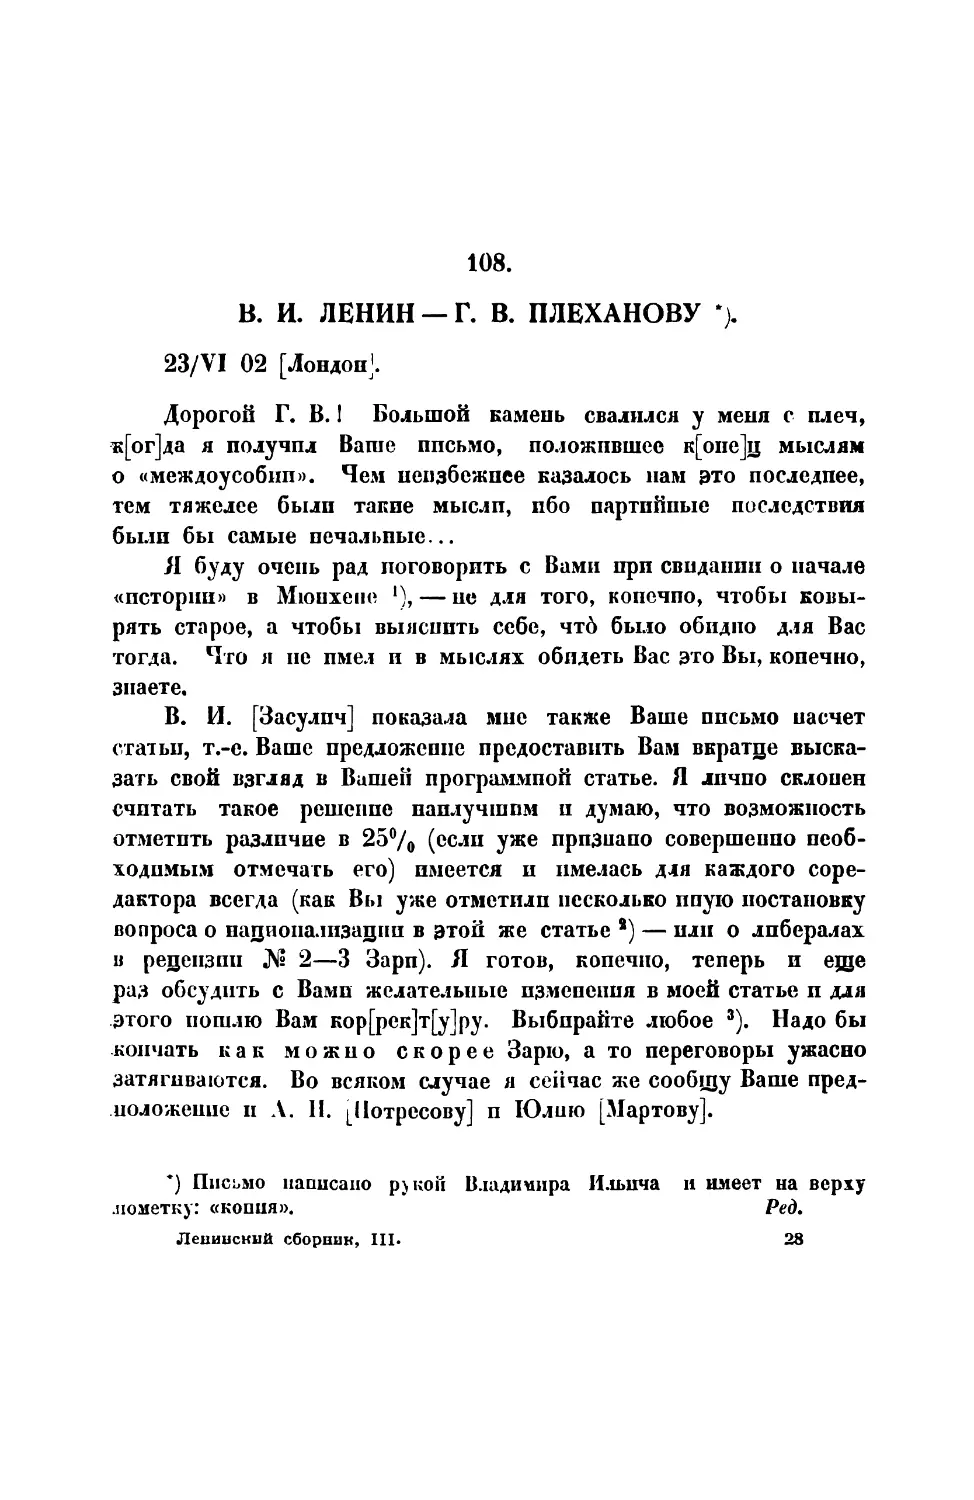 108. В. И. Ленин. — Письмо Г. В. Плеханову от 23 VI 1902 г.